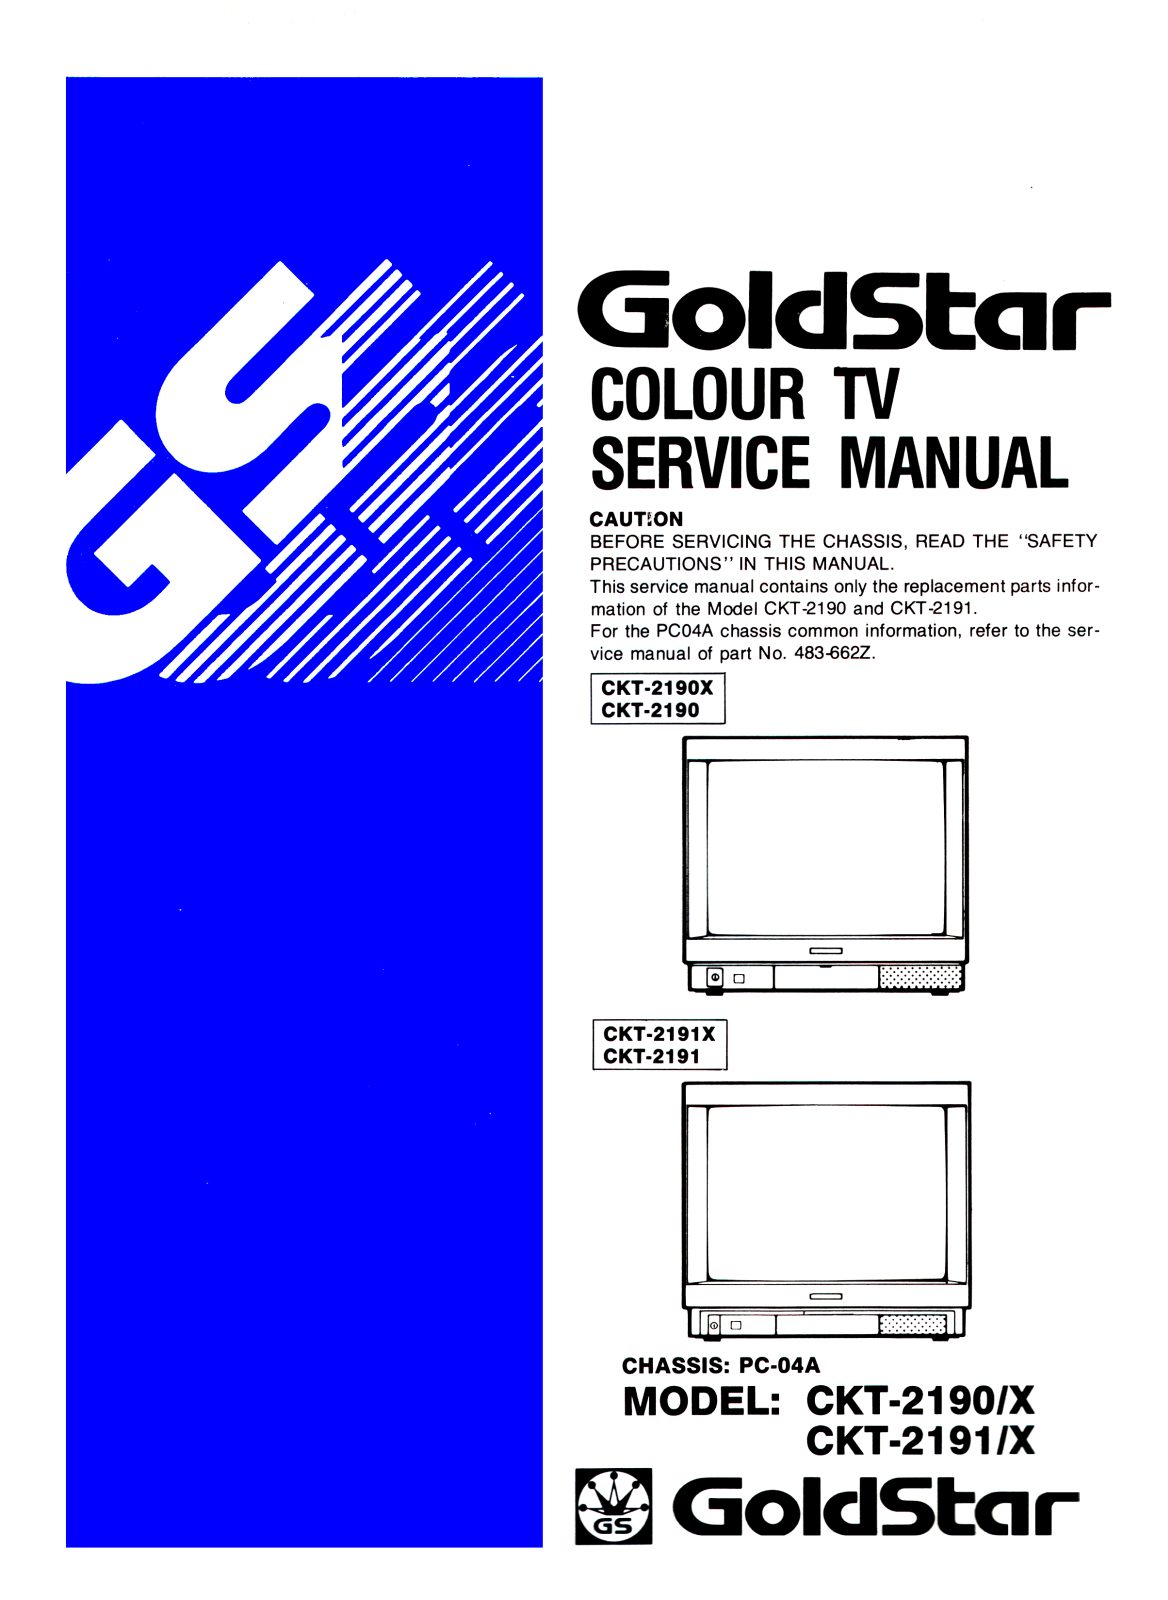 Goldstar CKT-2191 X, CKT-2191, CKT-2190 X, CKT-2190, PC-04A Service Manual